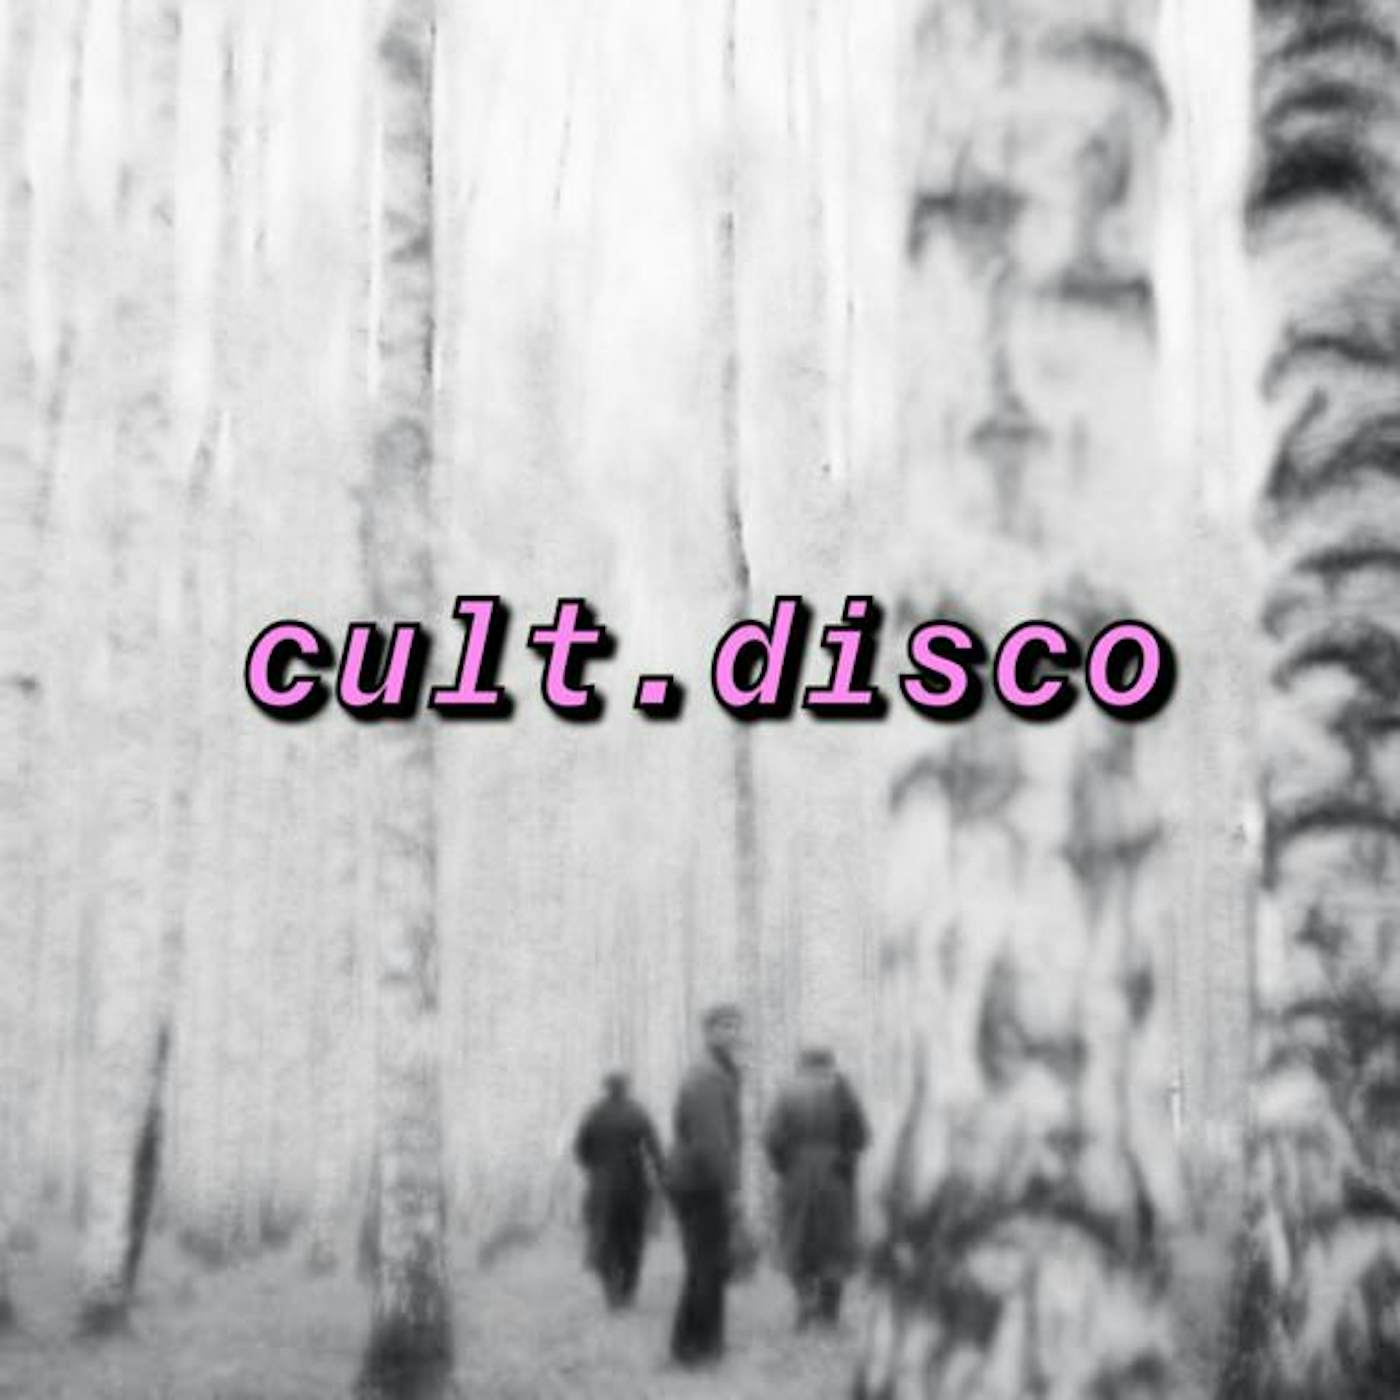 cult.disco